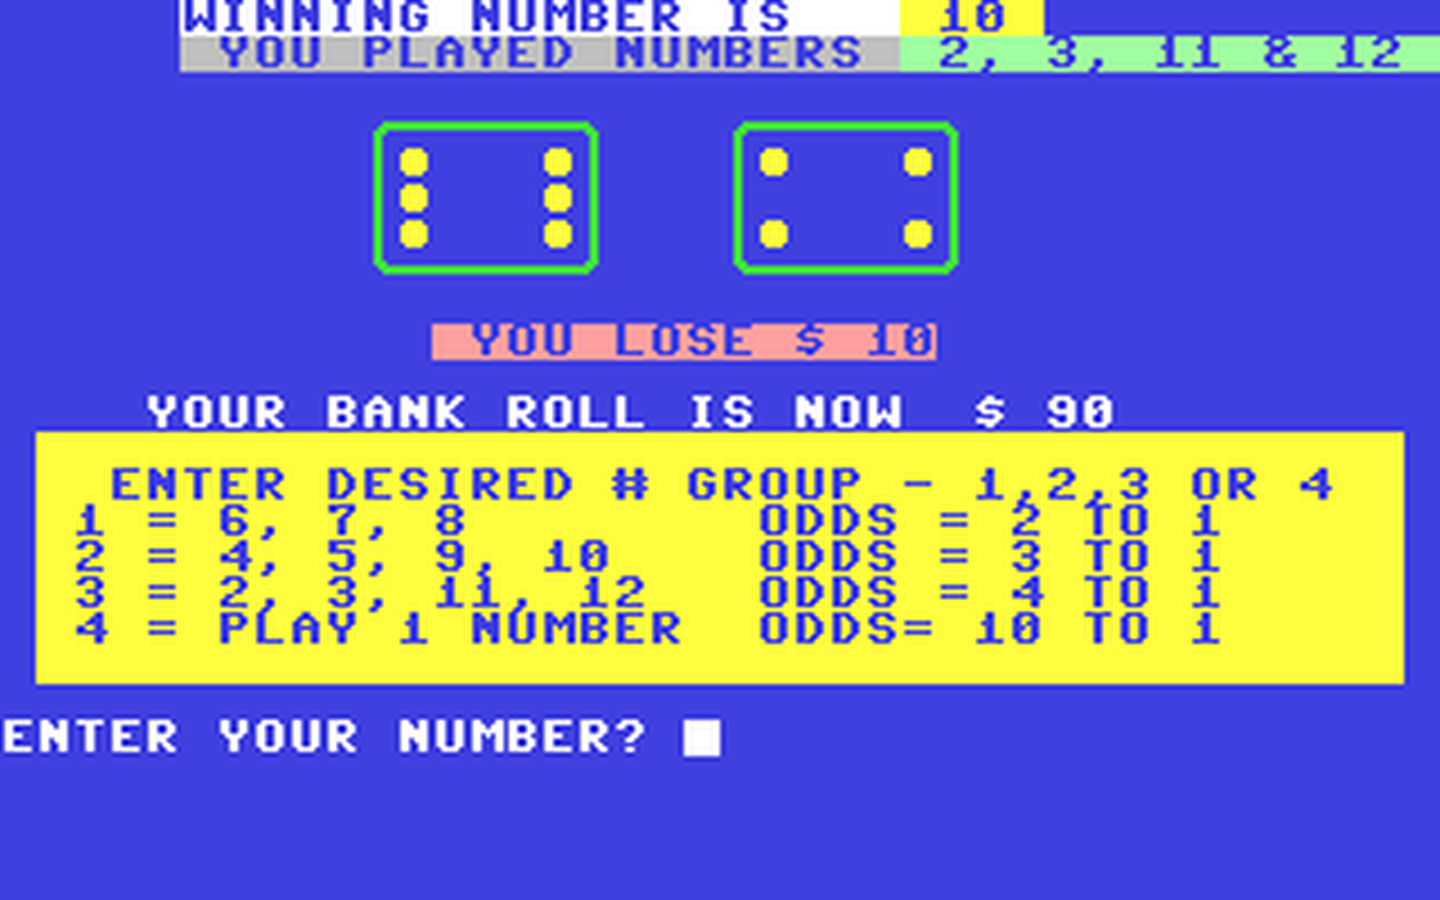 C64 GameBase Dice_Game (Public_Domain)